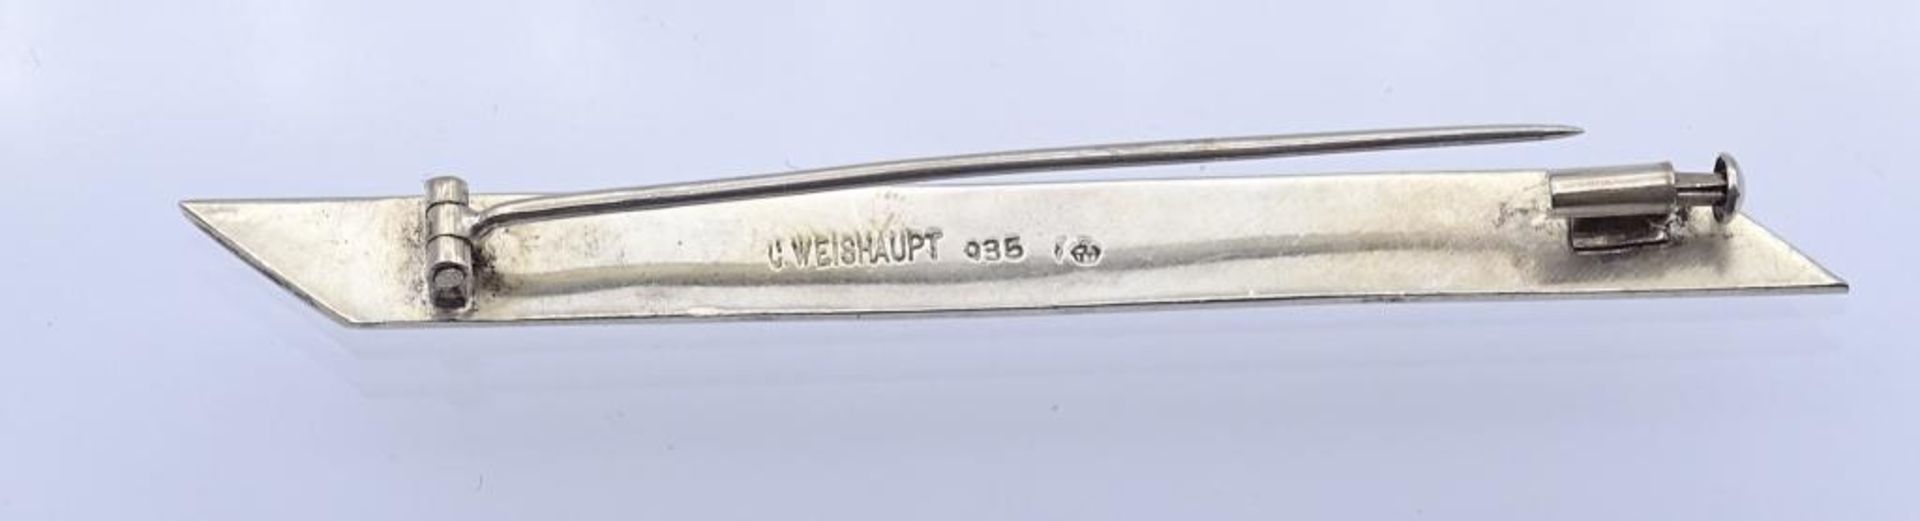 Stabbrosche,Silber 835/000 C.Weishaupt,L- 7,8cm, 7,9gr.- - -22.61 % buyer's premium on the hammer - Bild 3 aus 3